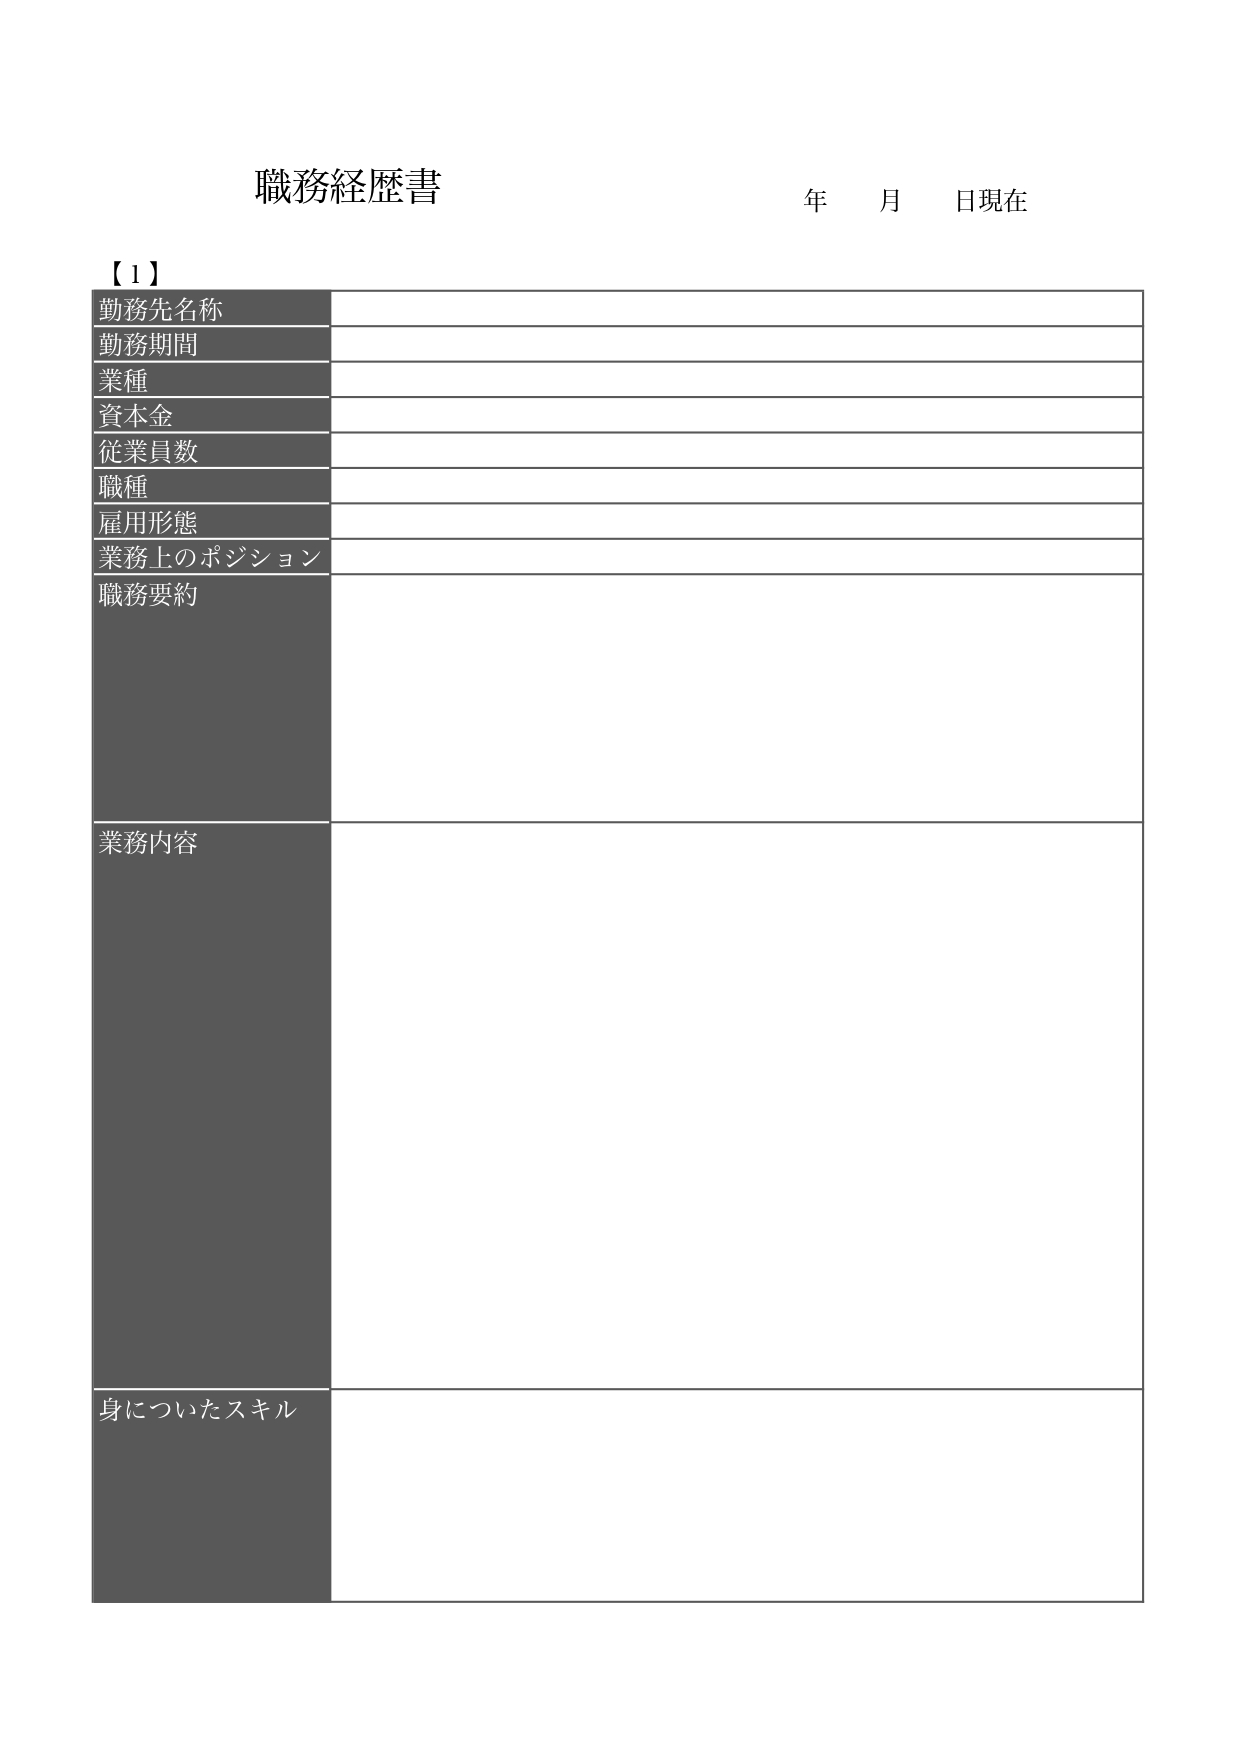 作り方＆書き方が簡単でおすすめ！職務経歴書「word・Excel・PDF」テンプレートを無料でダウンロード